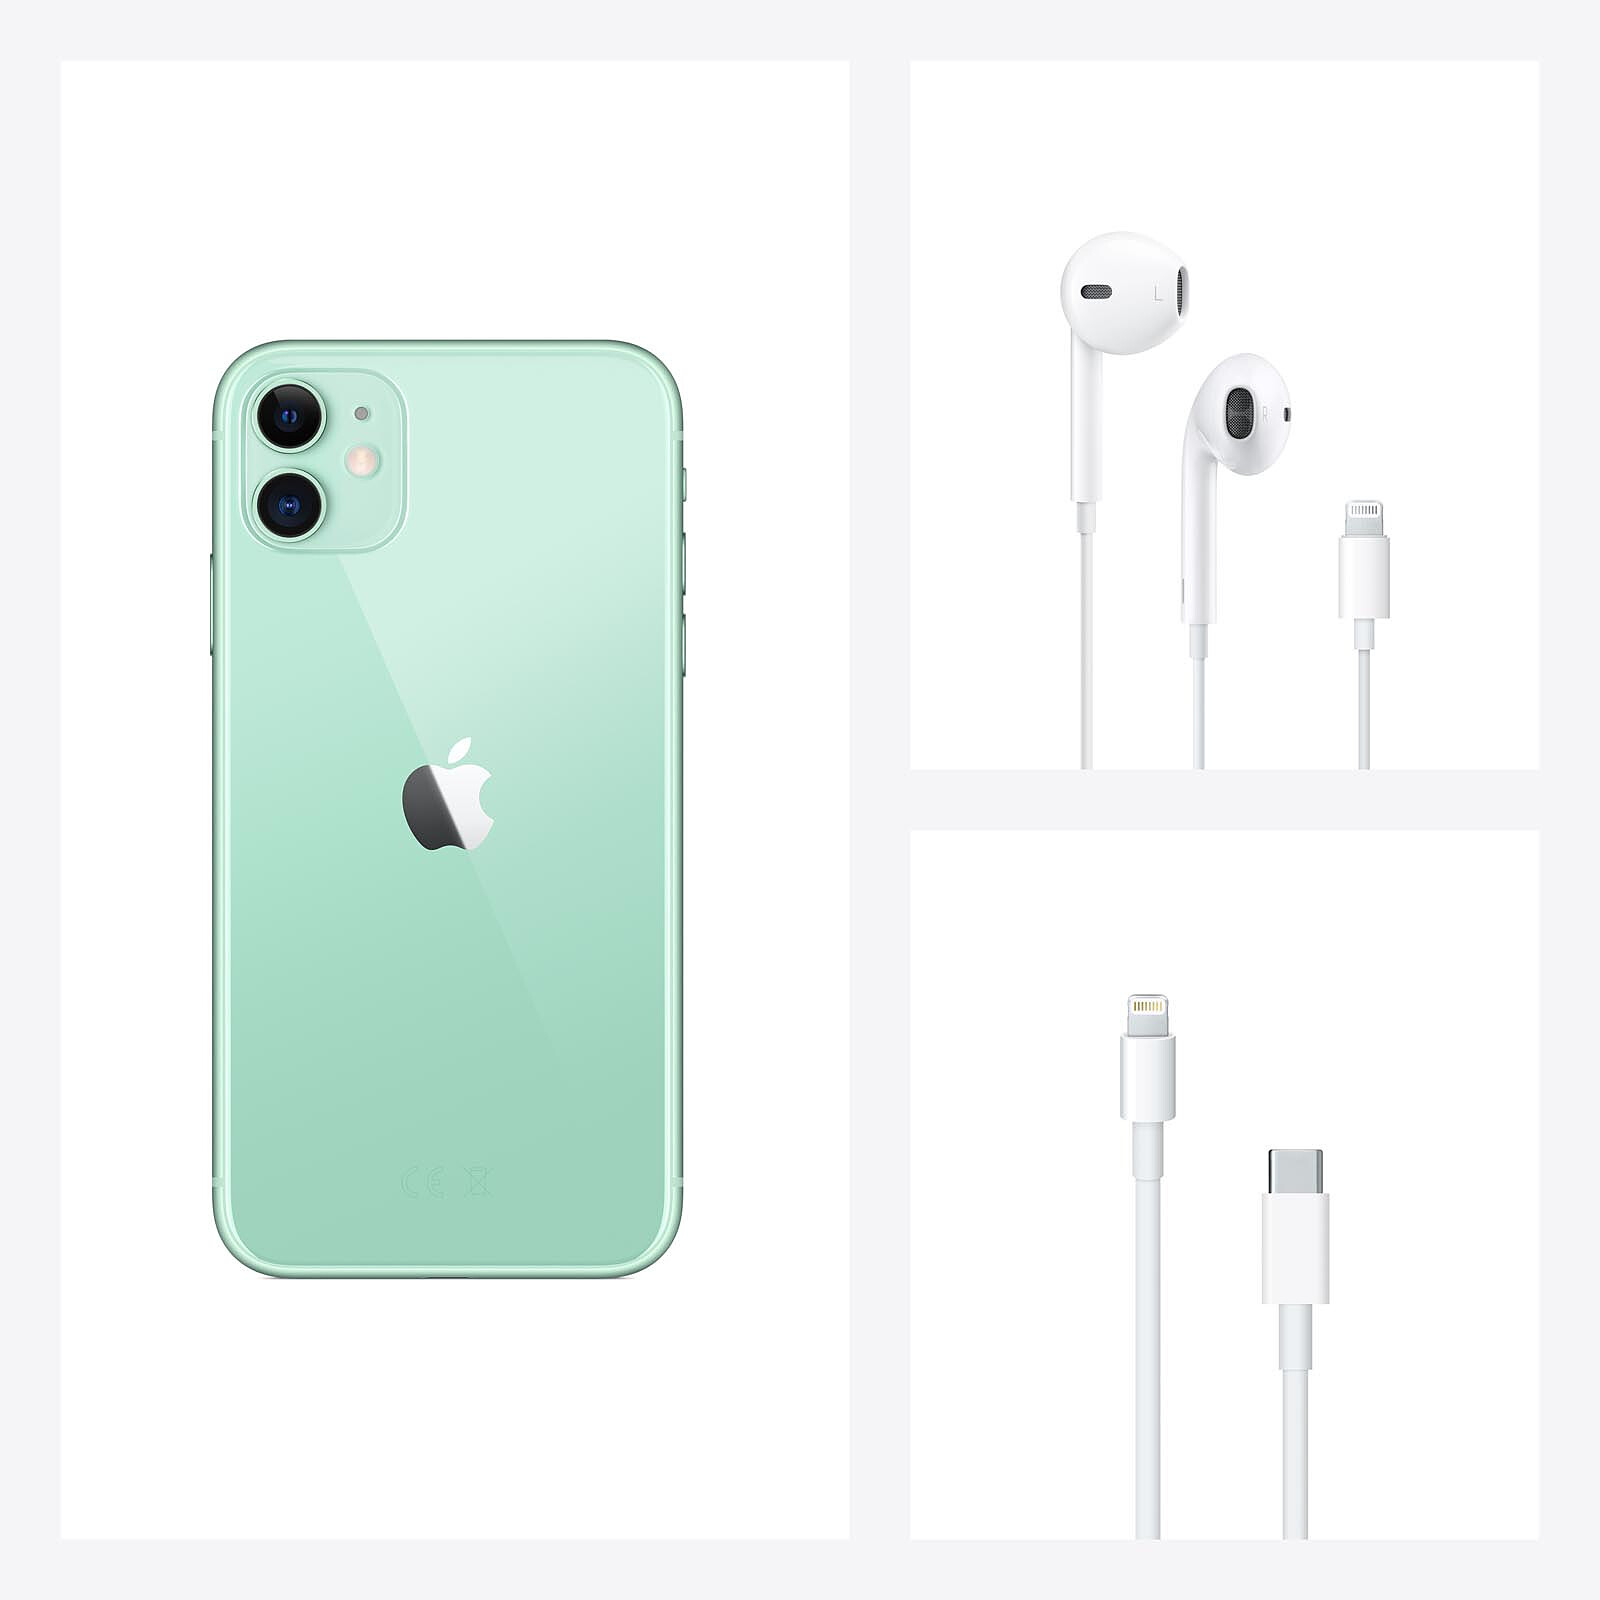 Apple iPhone 11 128GB Verde - Móvil y smartphone - LDLC